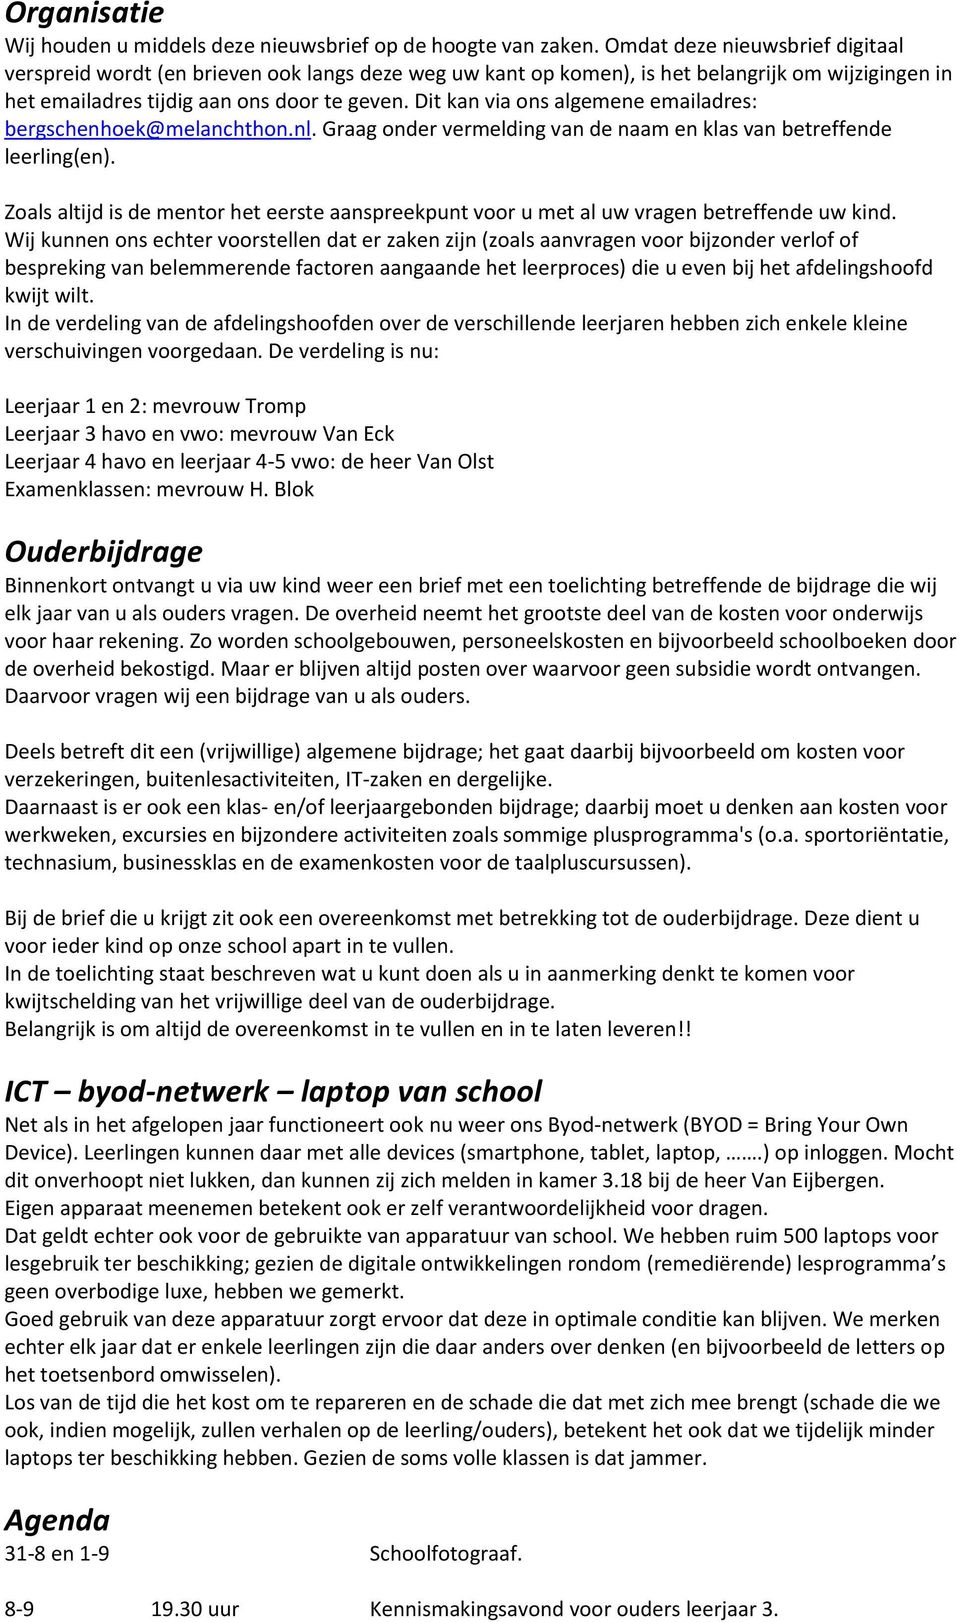 Dit kan via ons algemene emailadres: bergschenhoek@melanchthon.nl. Graag onder vermelding van de naam en klas van betreffende leerling(en).